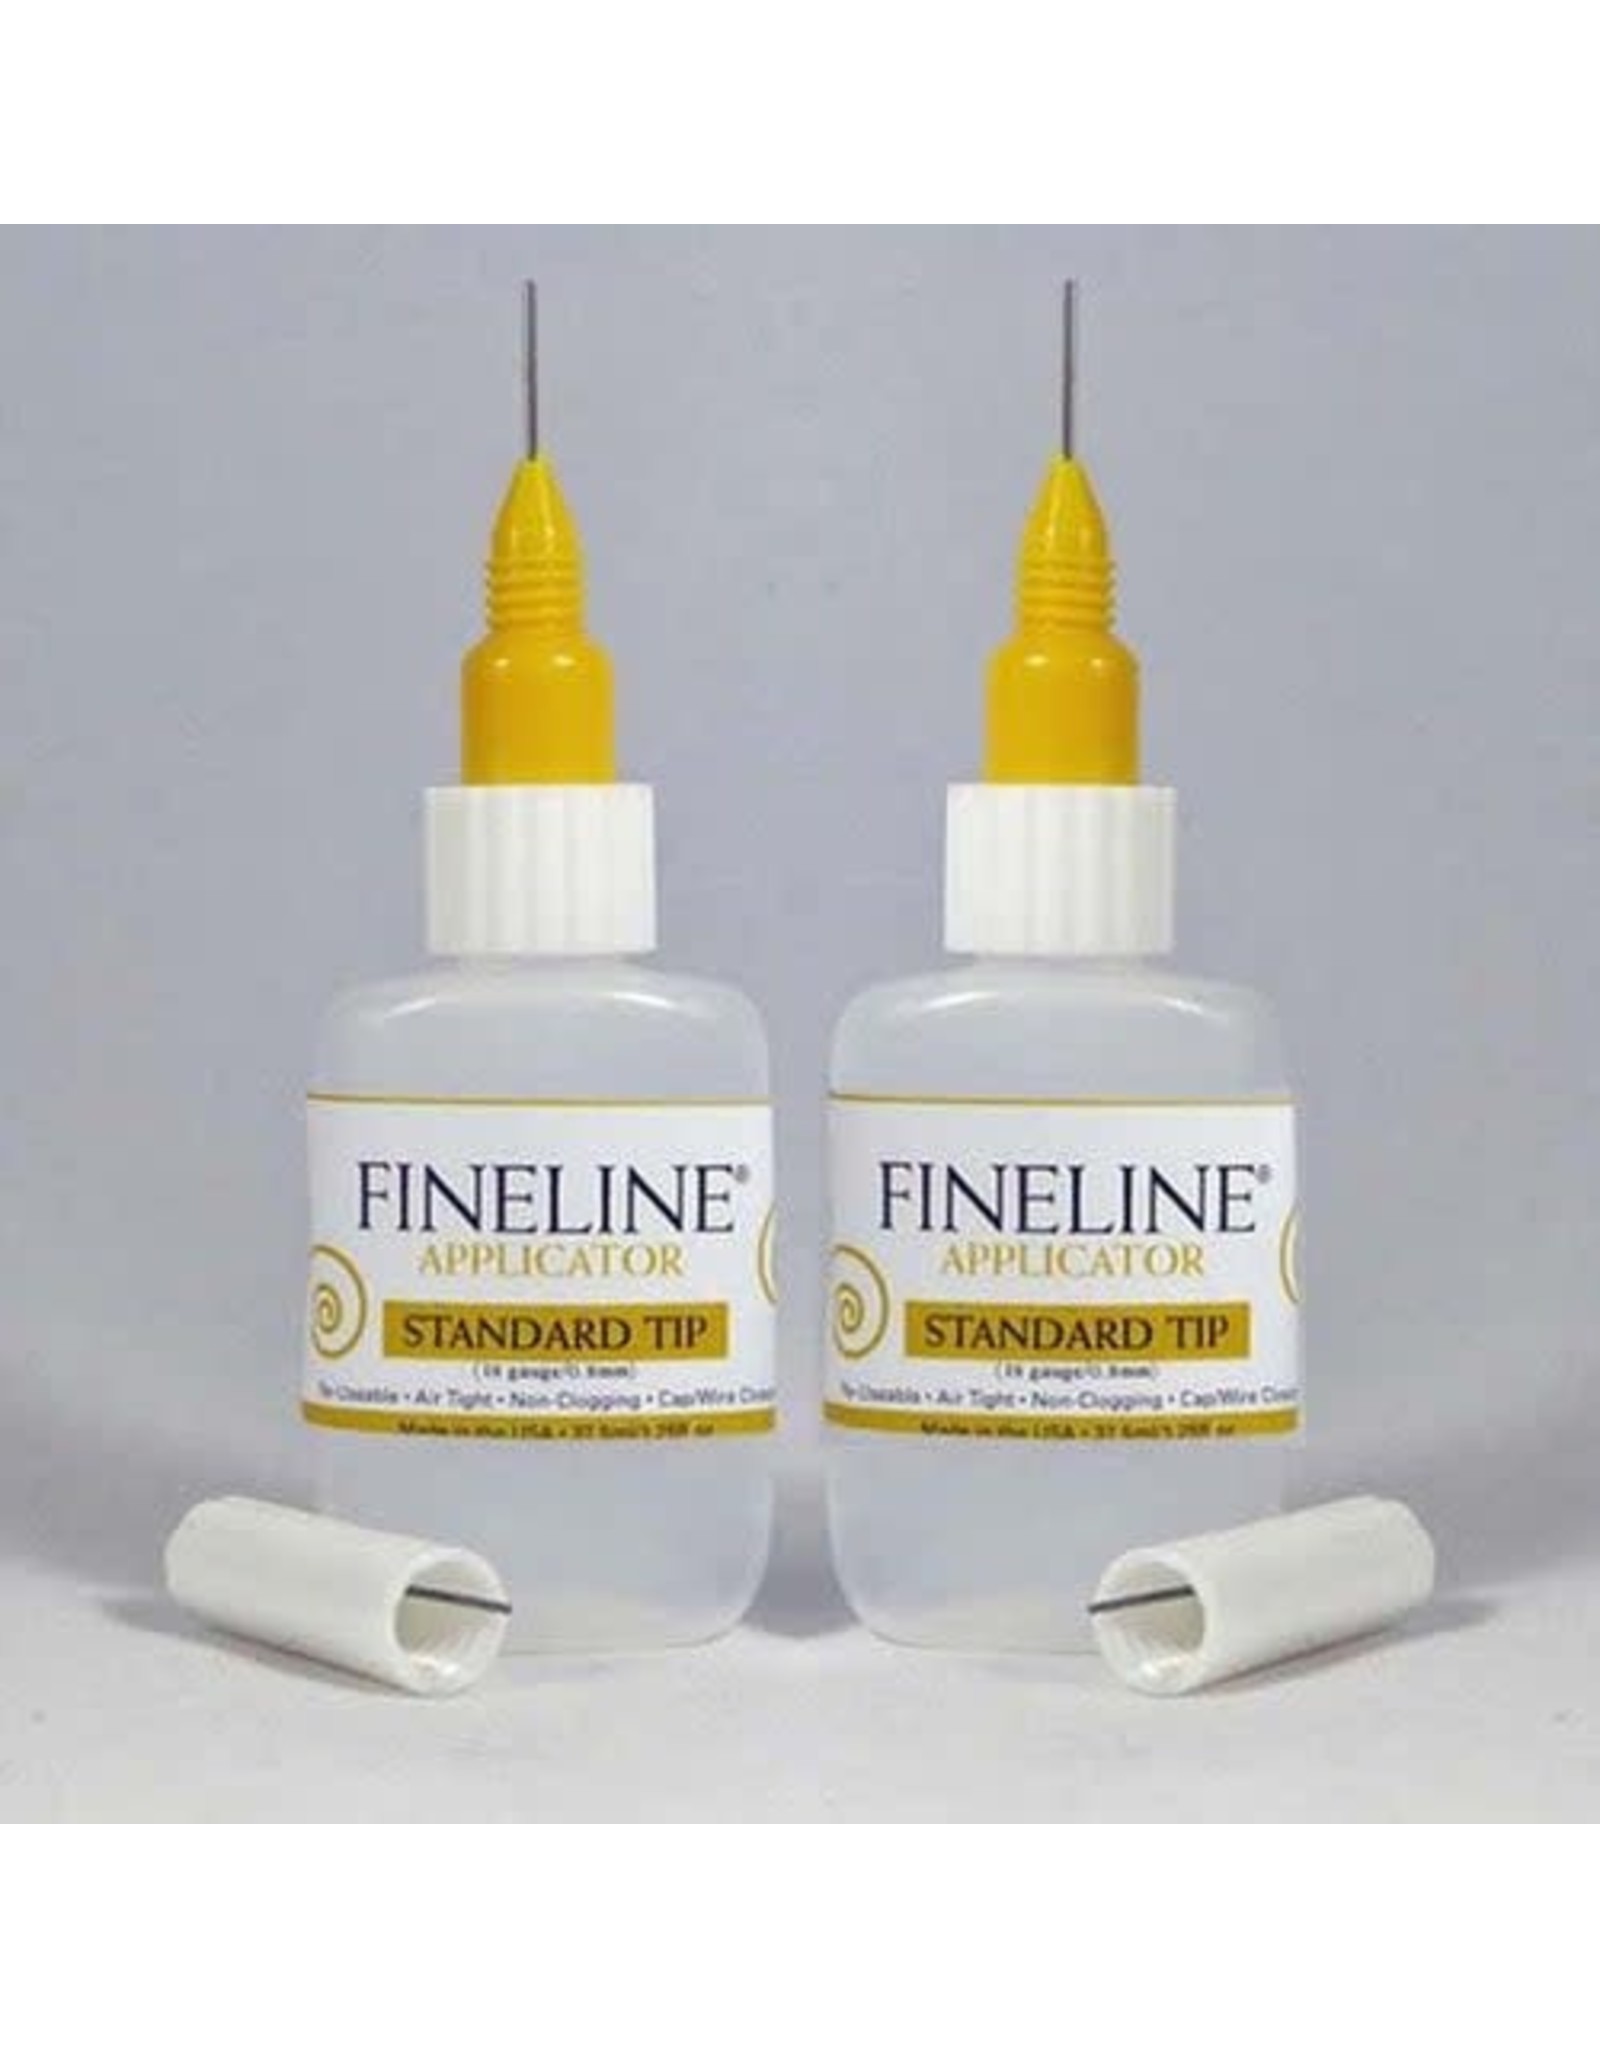 FINELINE FINELINE 18 GAUGE/0.8mm  PRECISION APPLICATOR 2PK